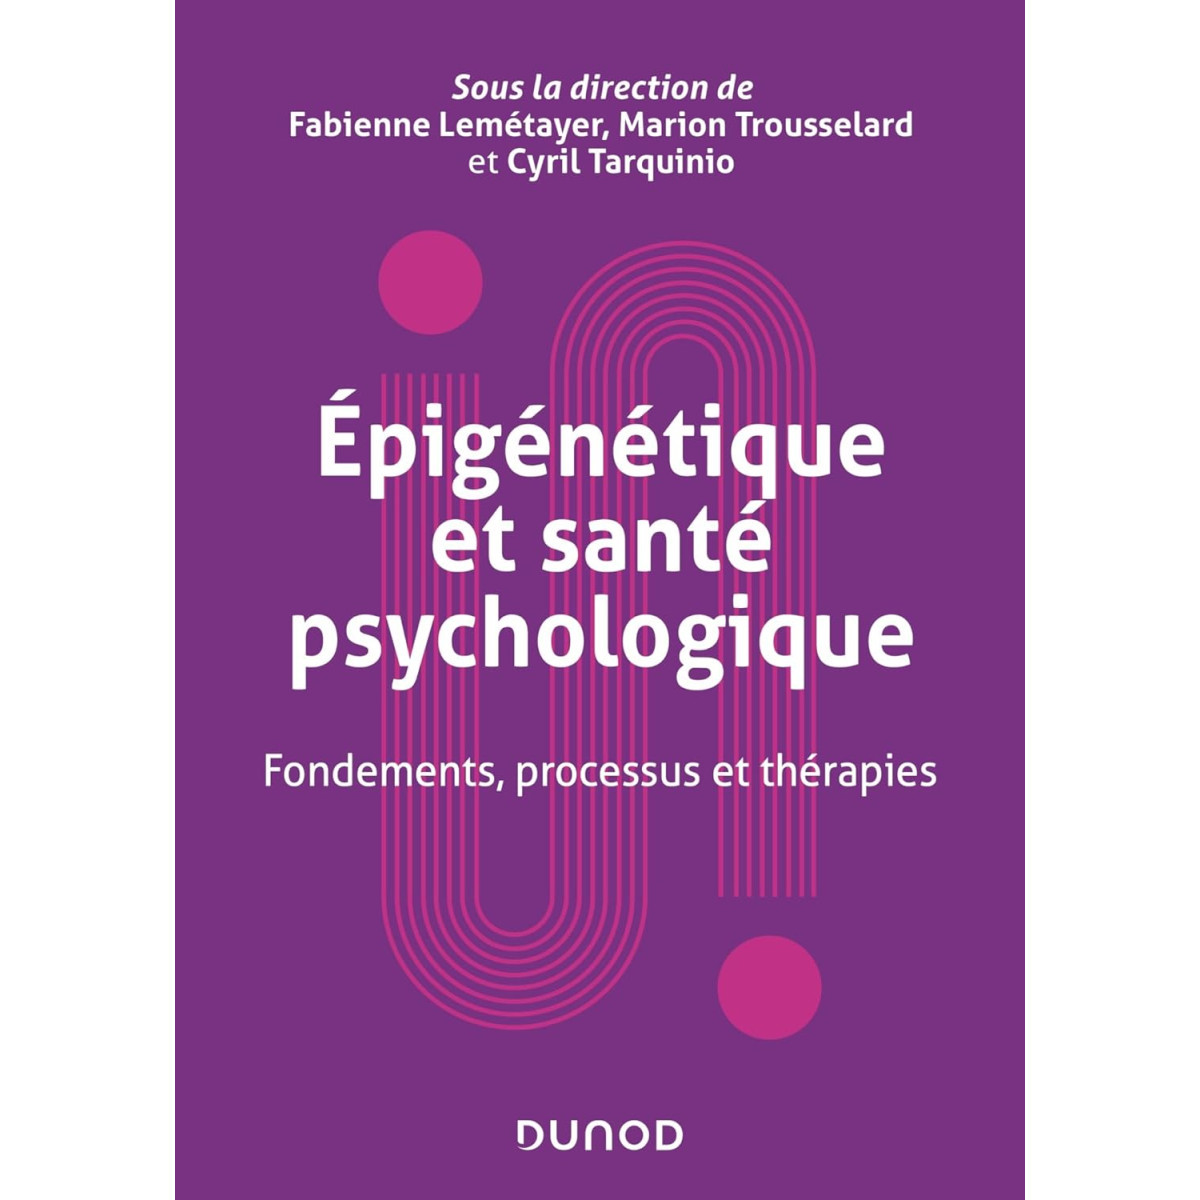 Epigénétique et santé psychologique: Fondements, processus et thérapies